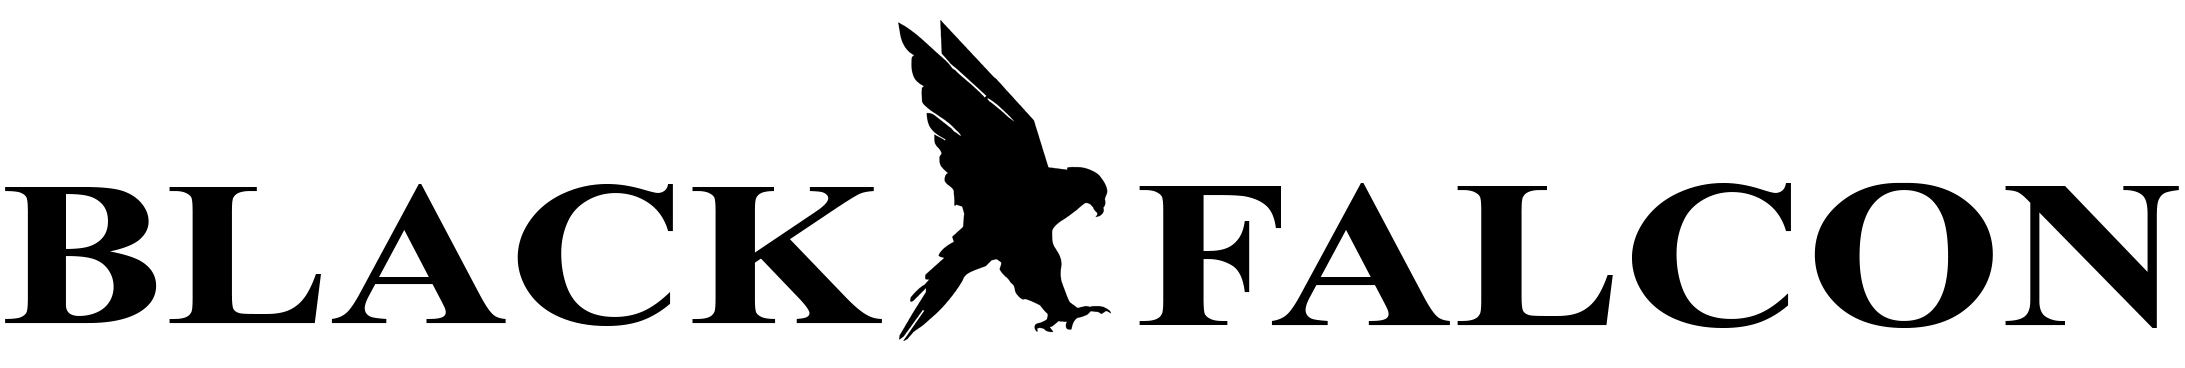 Black Falcon logo 2.png